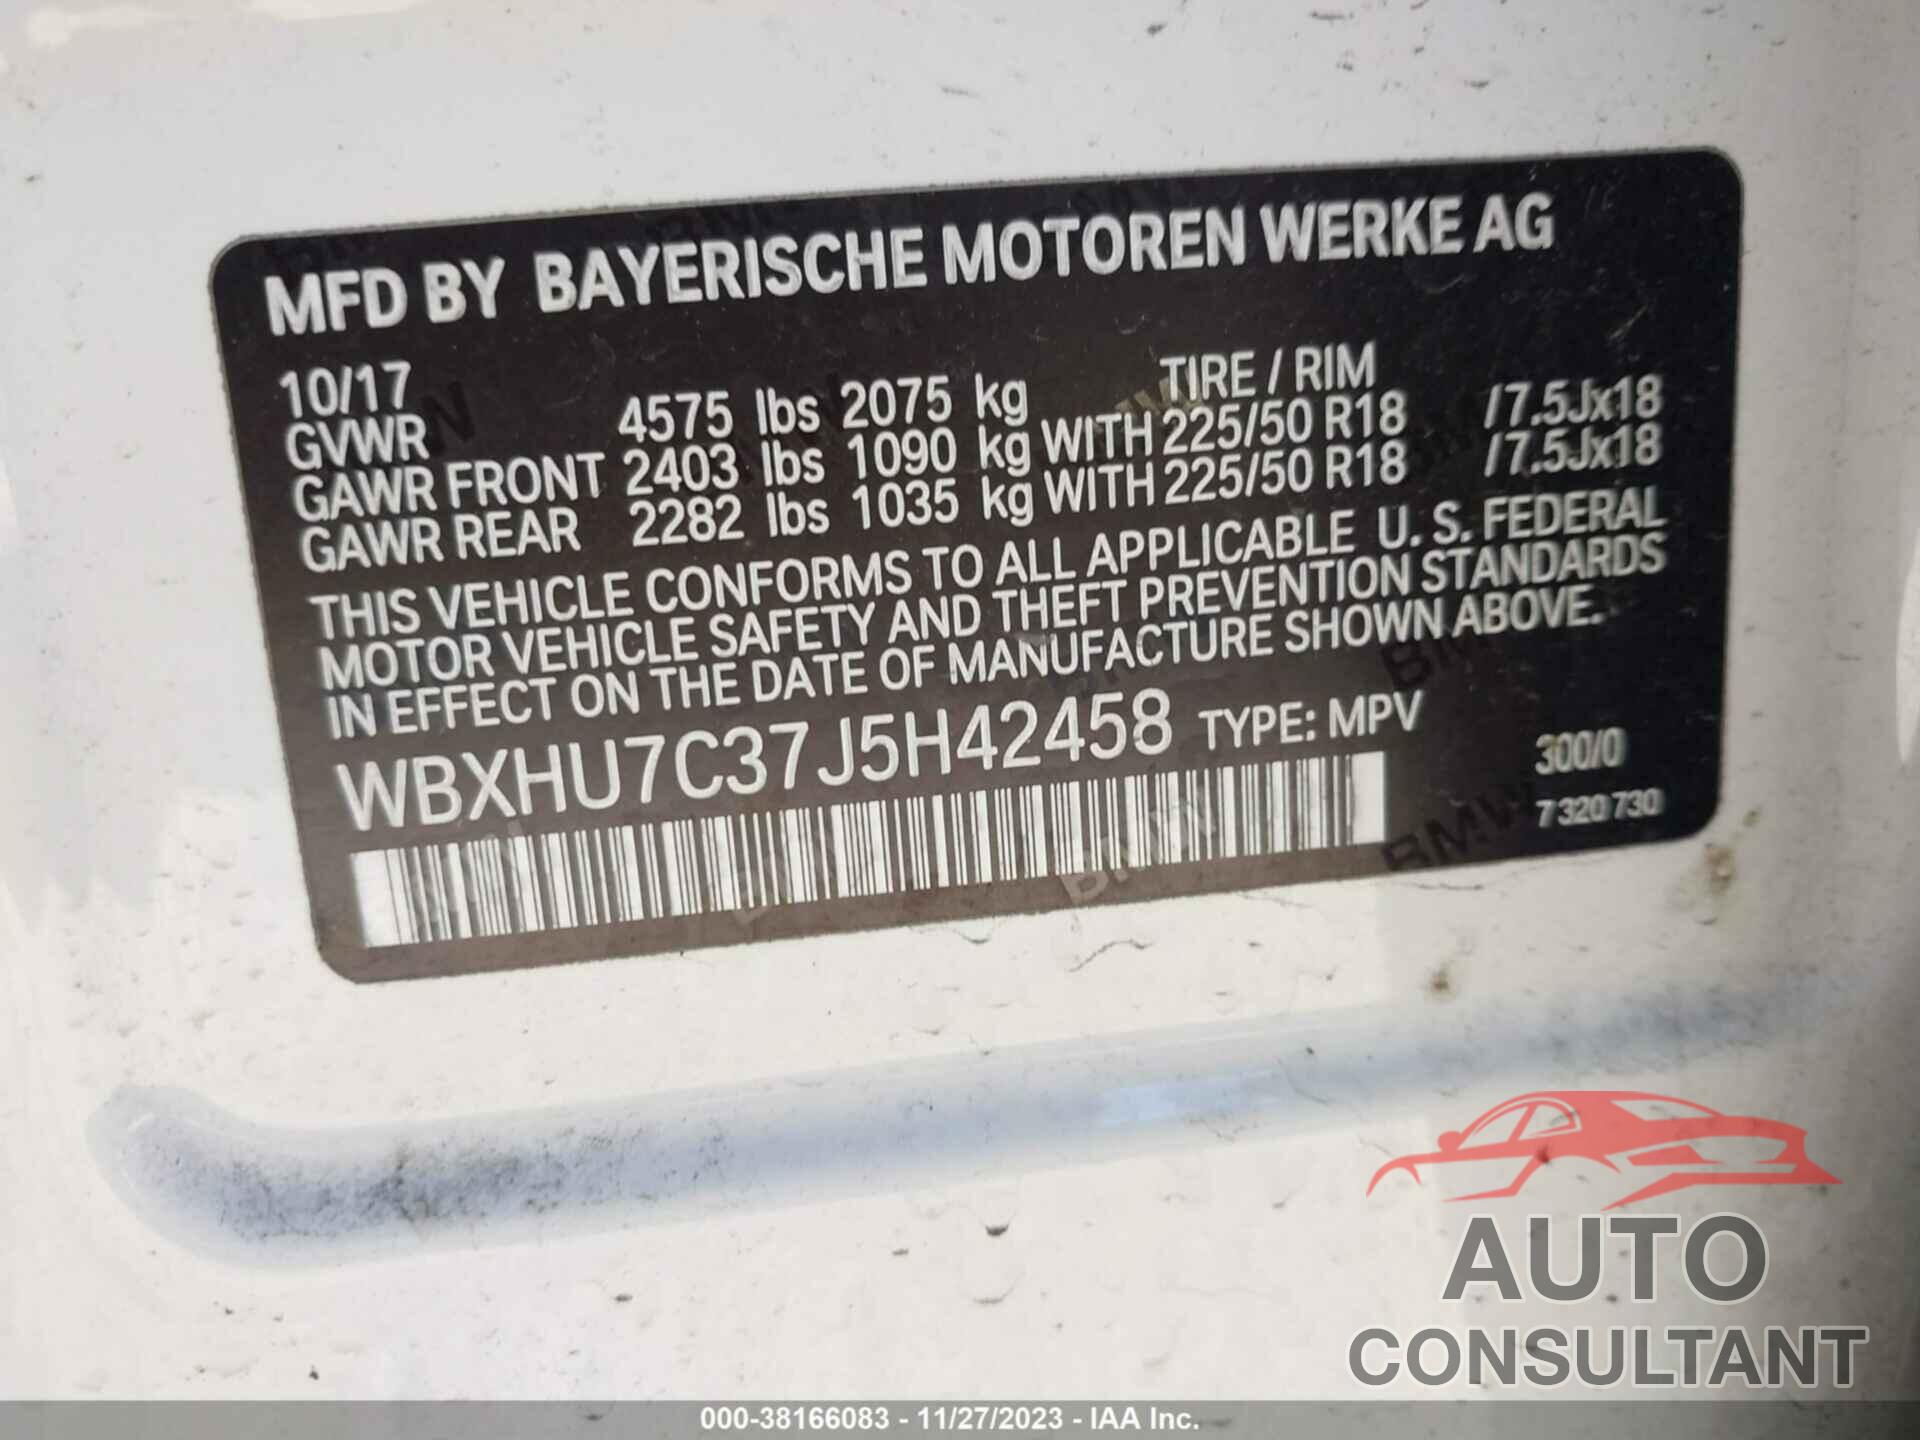 BMW X1 2018 - WBXHU7C37J5H42458